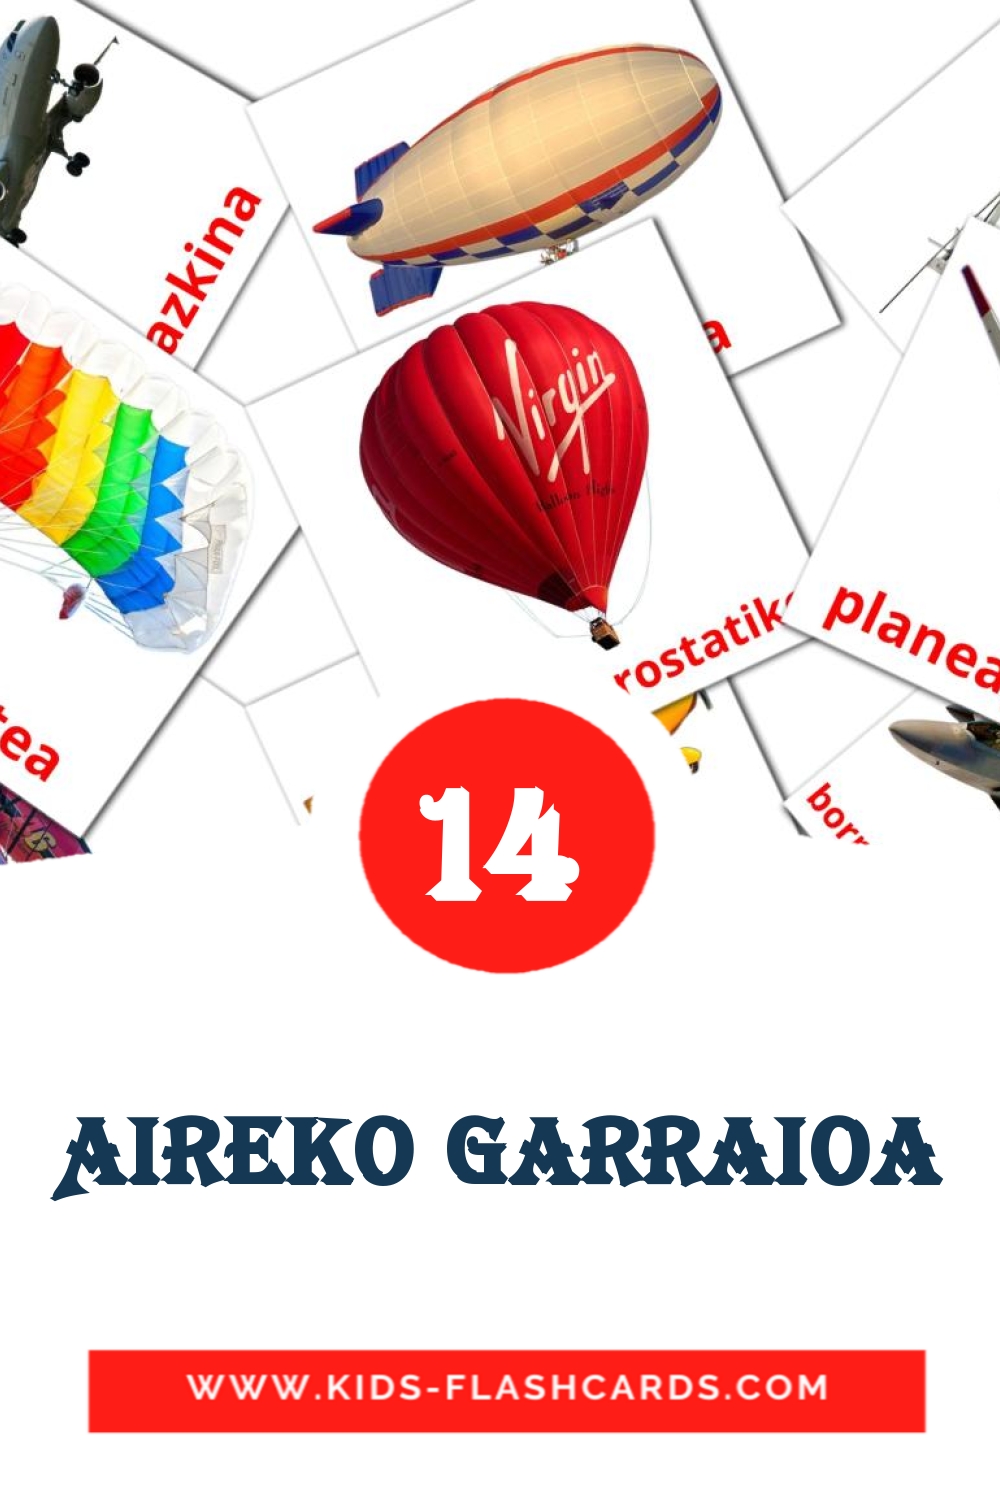 14 Aireko garraioa Picture Cards for Kindergarden in basque